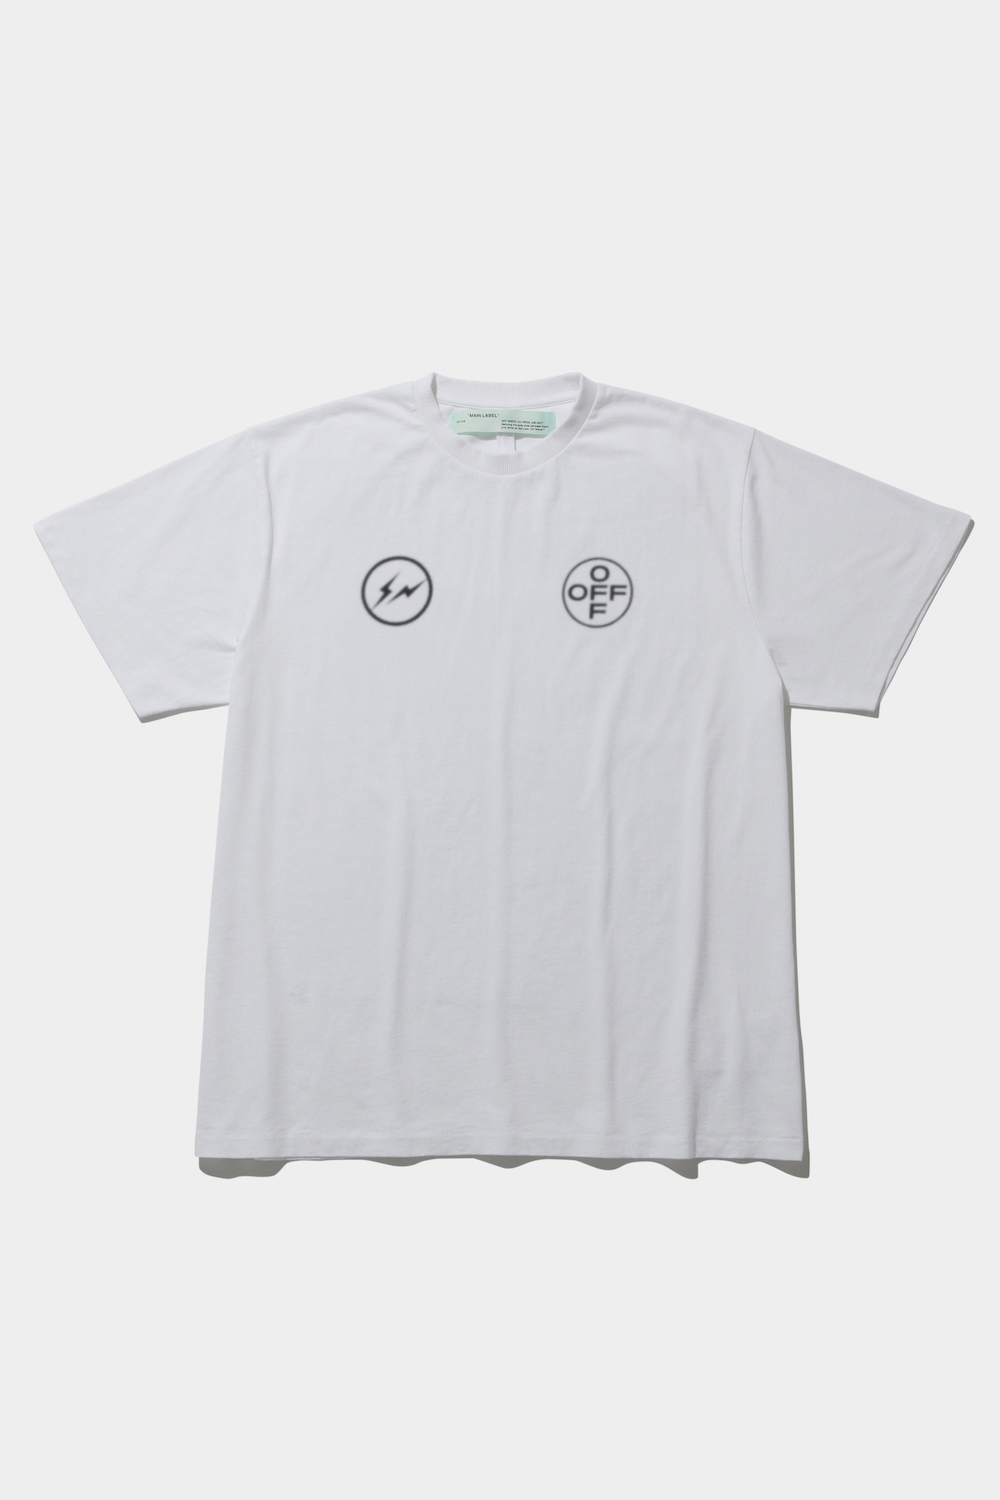 THE CONVENI FRAGMENT Tシャツ L 白と黒セットTシャツ/カットソー(半袖/袖なし)